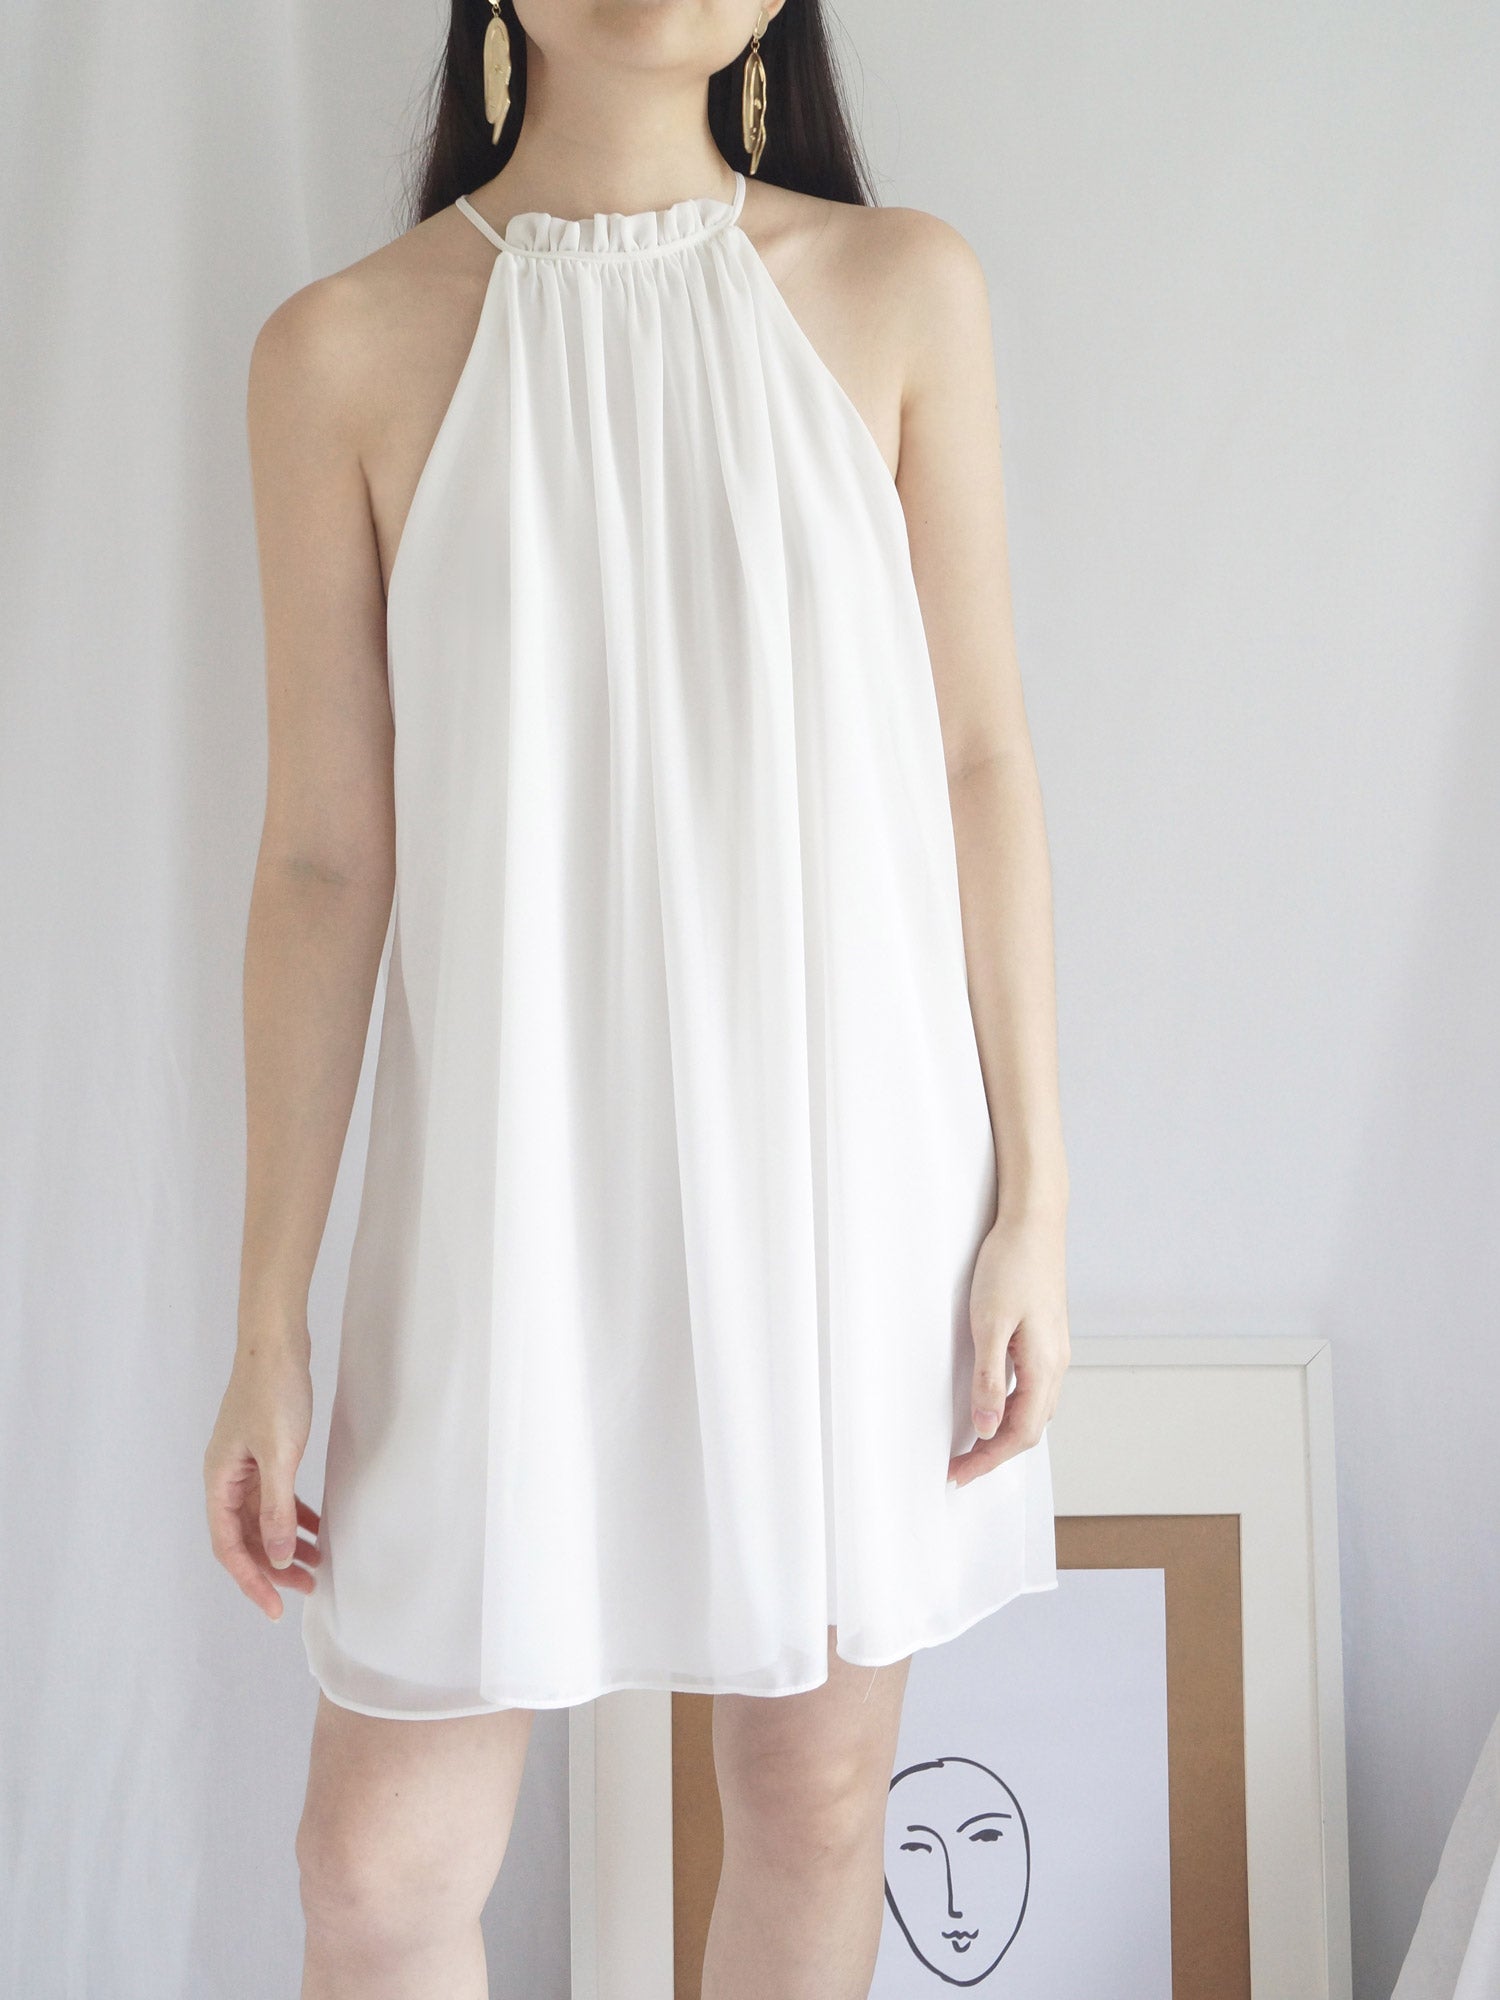 gabi label Aria Dress white 2 0d6b76ed e7c8 4c7f 93b5 fbf3165c49d9